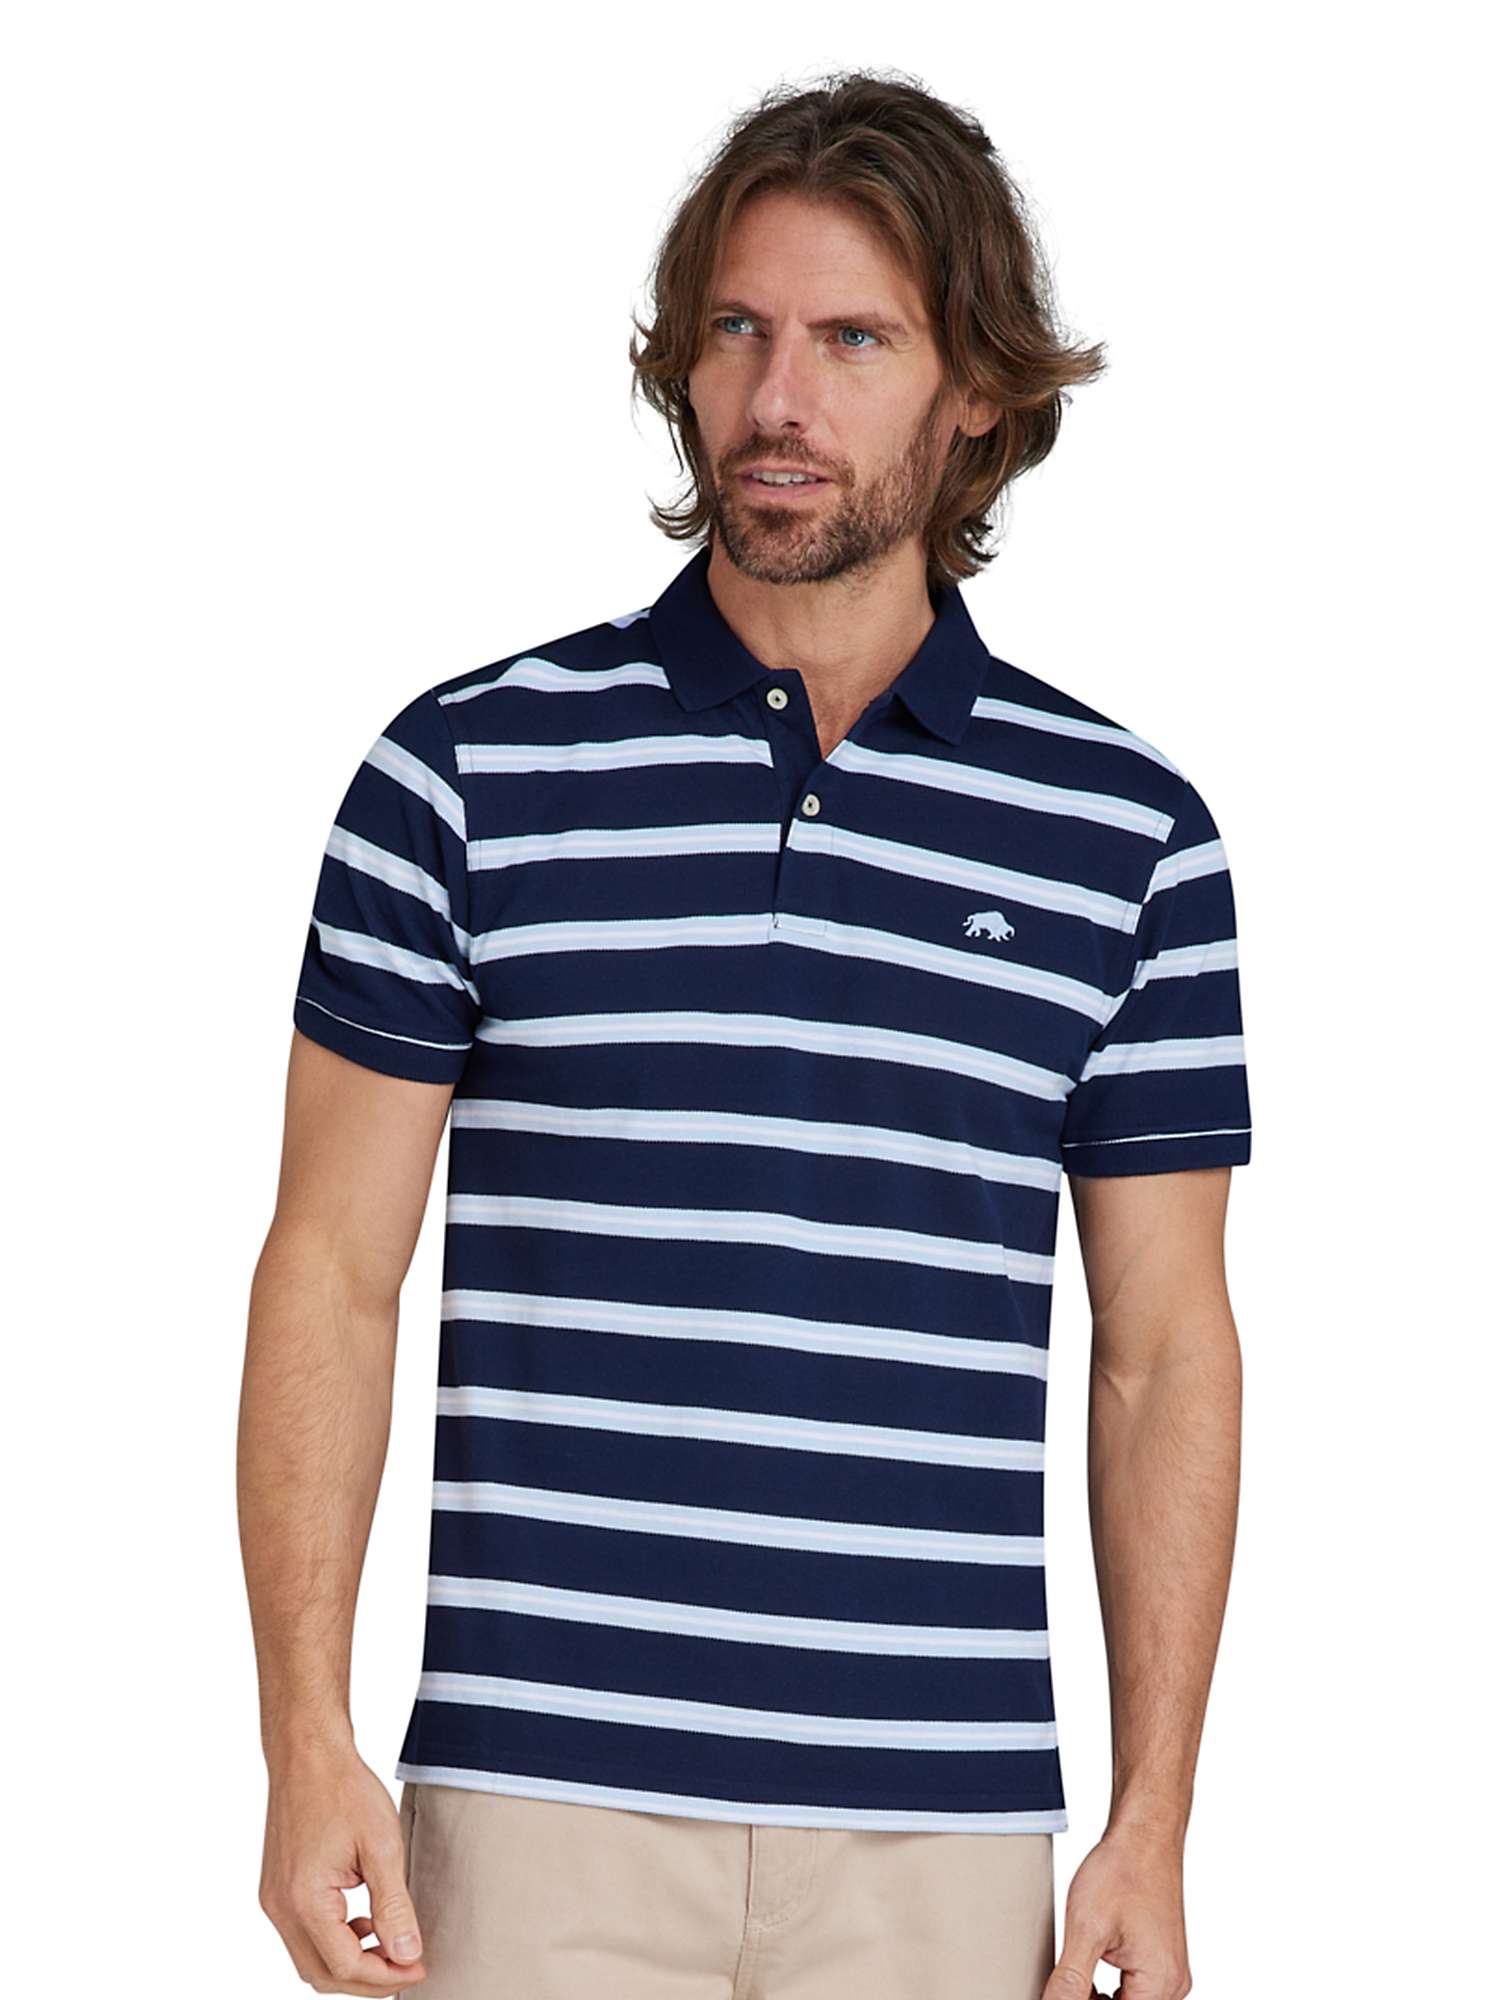 Buy Raging Bull Triple Stripe Birdseye Polo Shirt, Navy/Multi Online at johnlewis.com